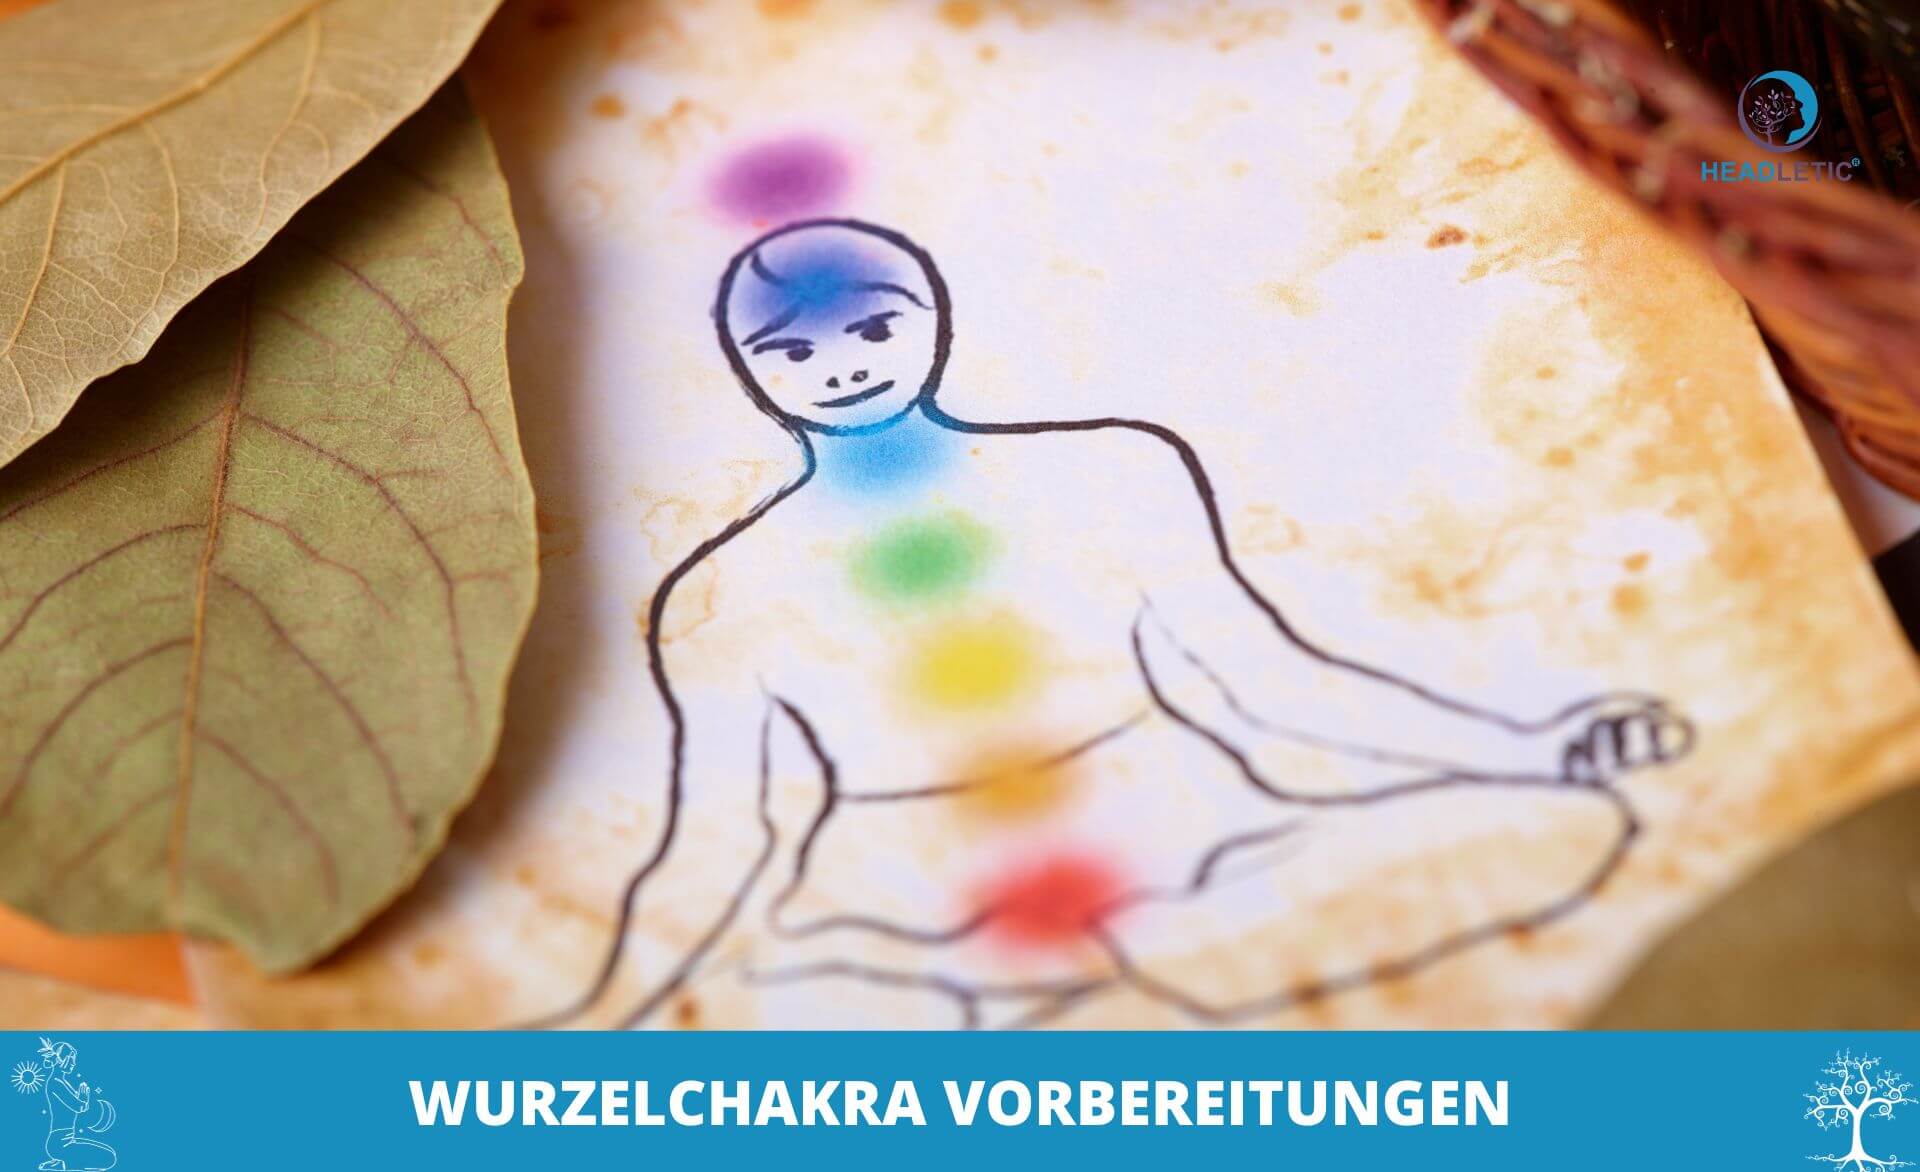 Eine Zeichnung eines Mannes in einer Yoga-Pose mit Blättern um ihn herum, der Wurzelchakra-Meditation praktiziert.